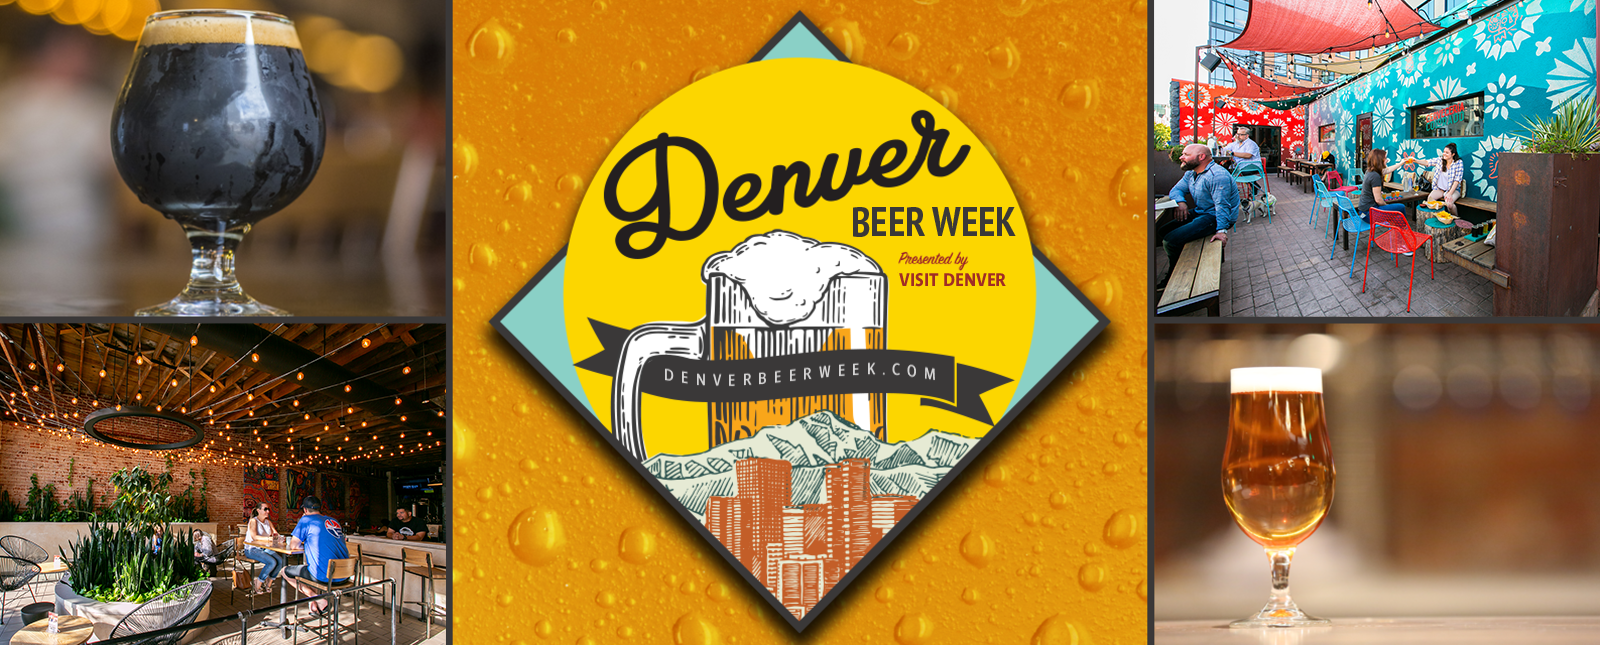 Denver Beer Week